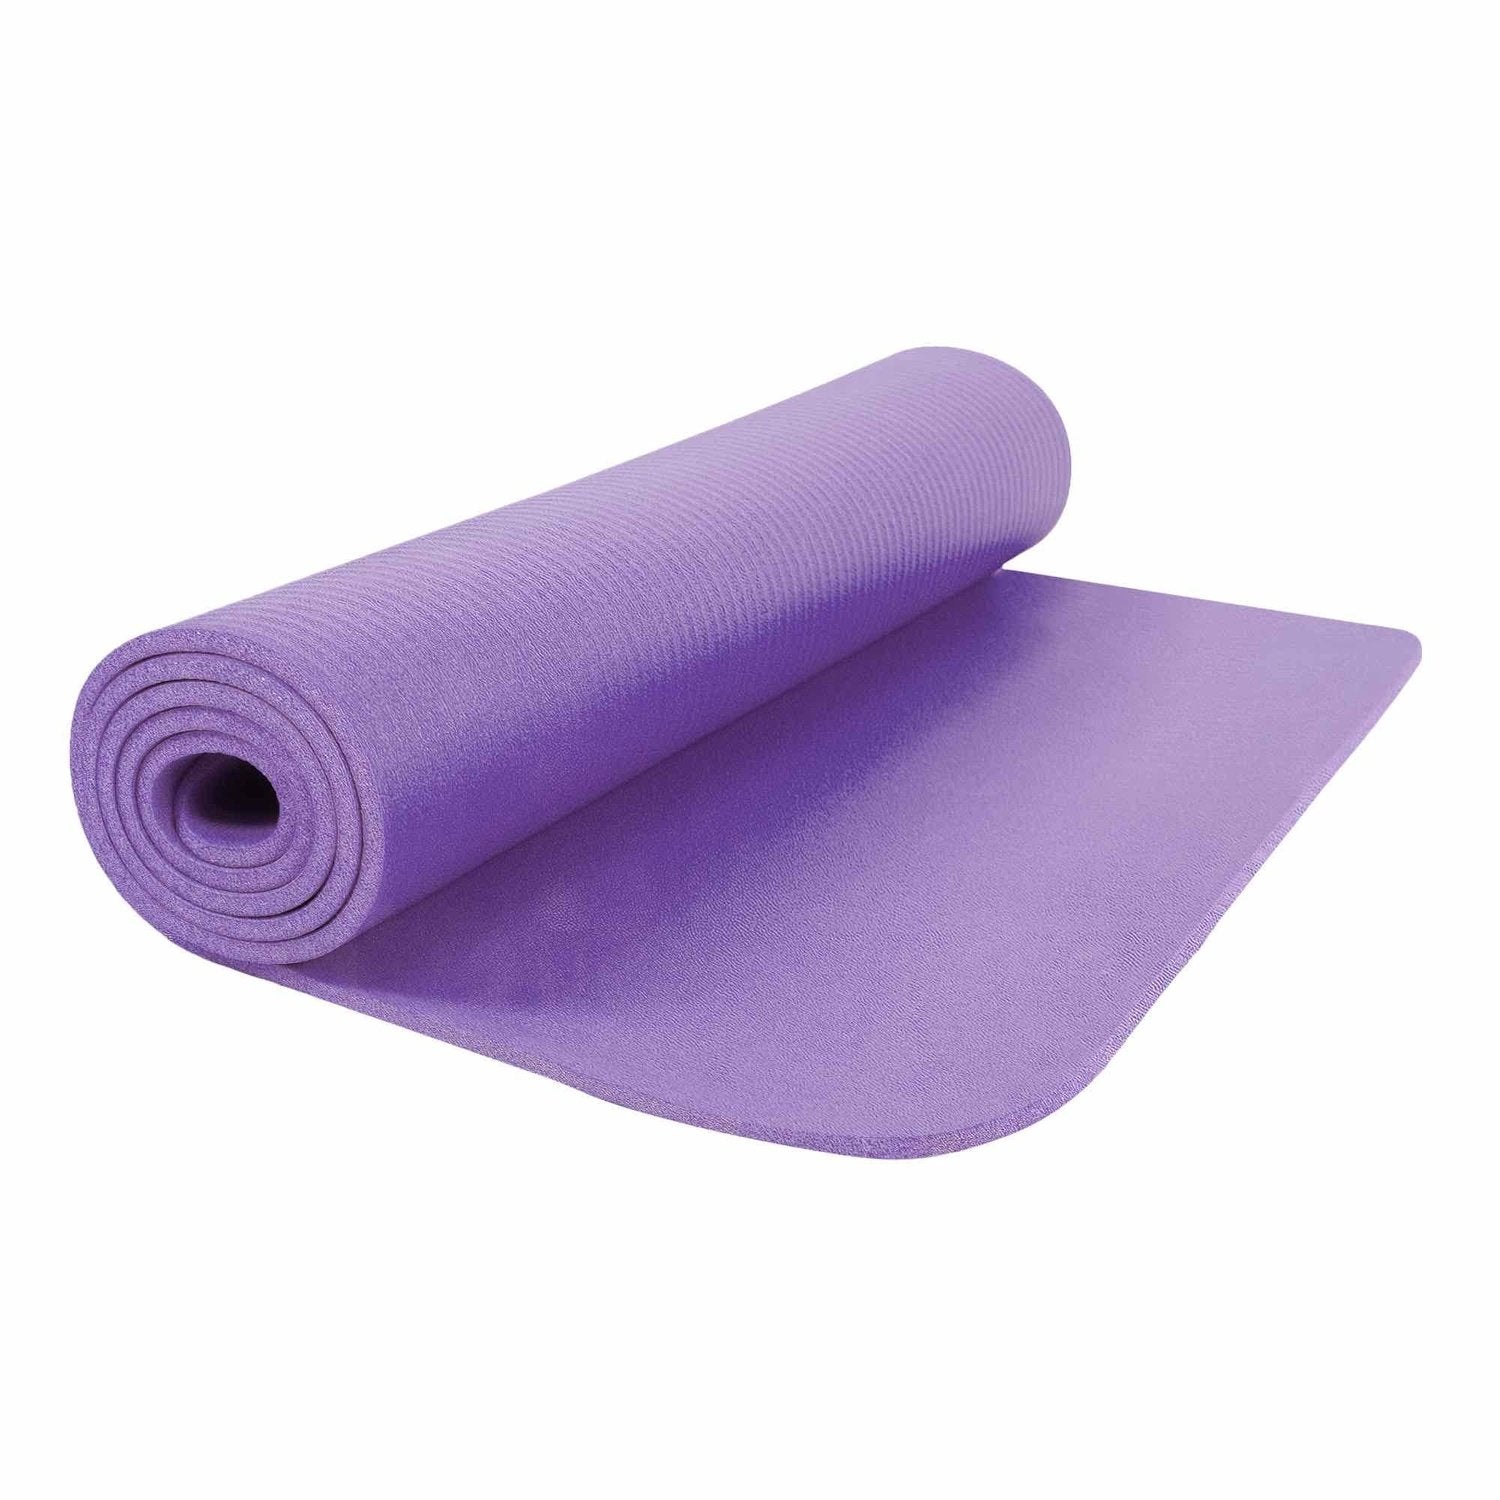 HighPowered Yogamatte (NBR, 183x61x0.8 cm) Violett kaufen bei HighPowered.ch